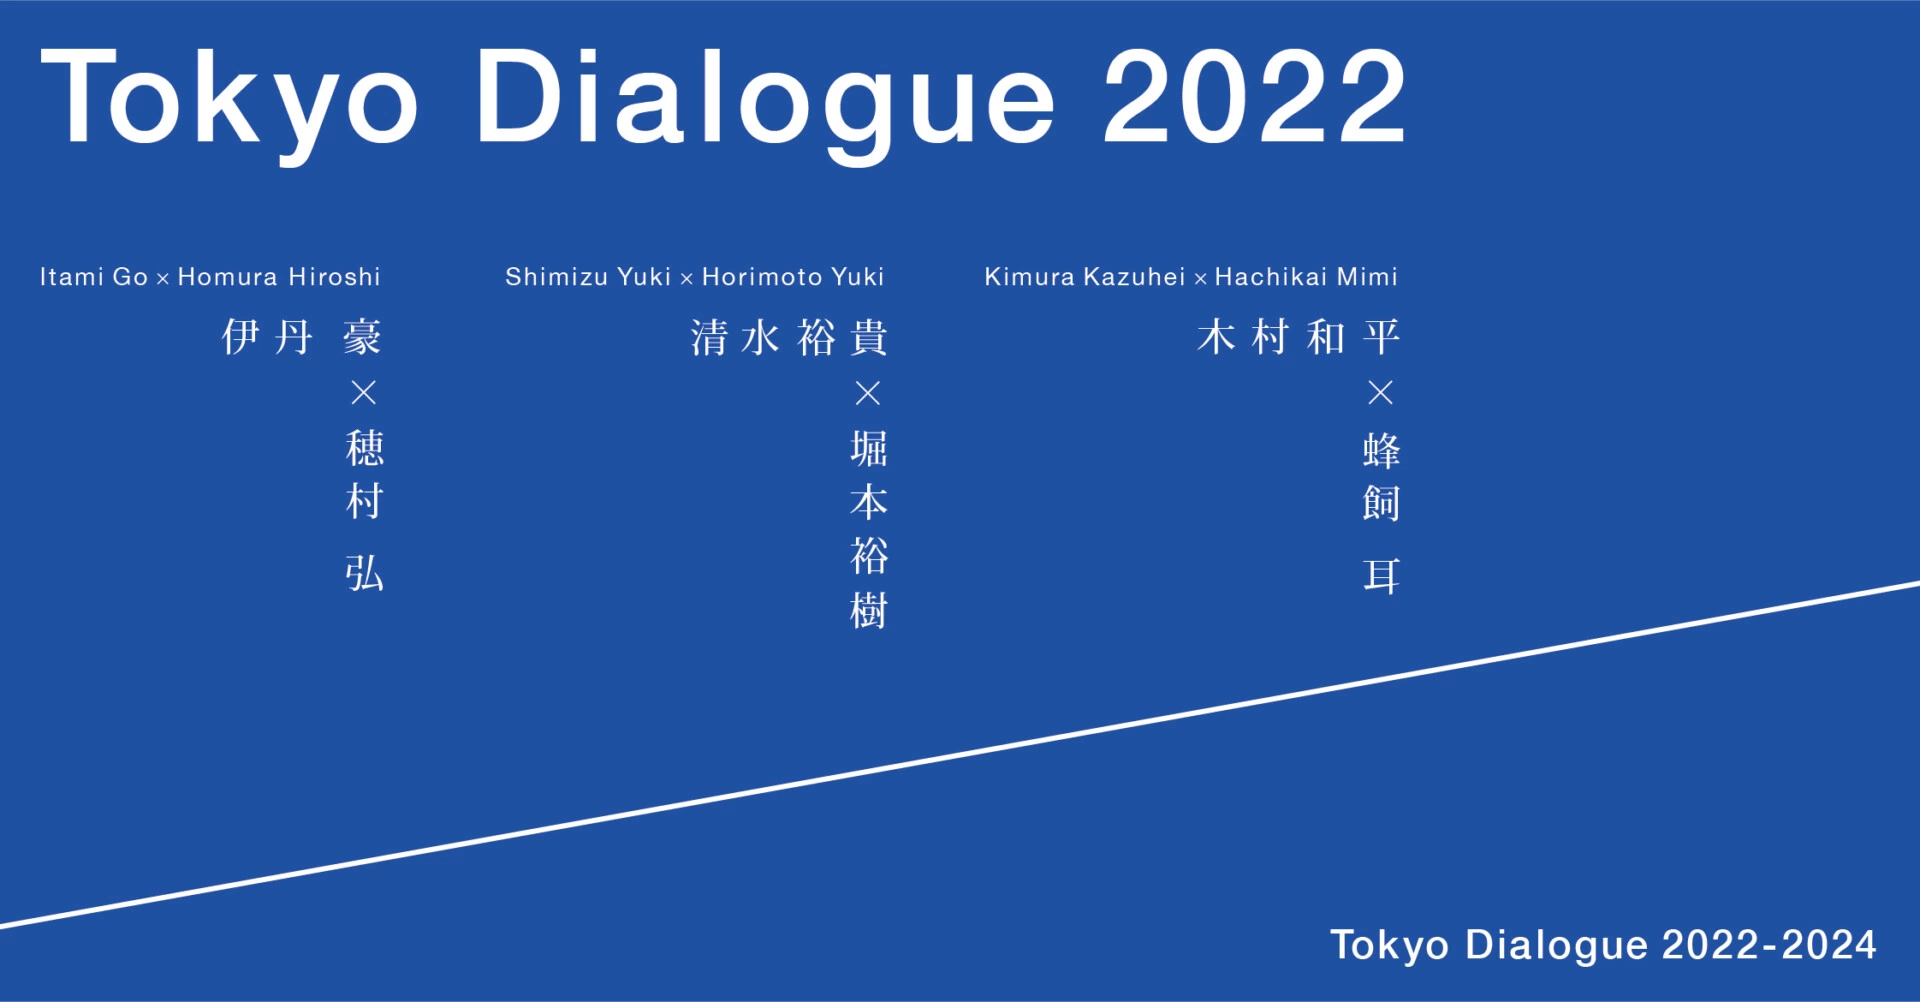 Tokyo Dialogue 2022